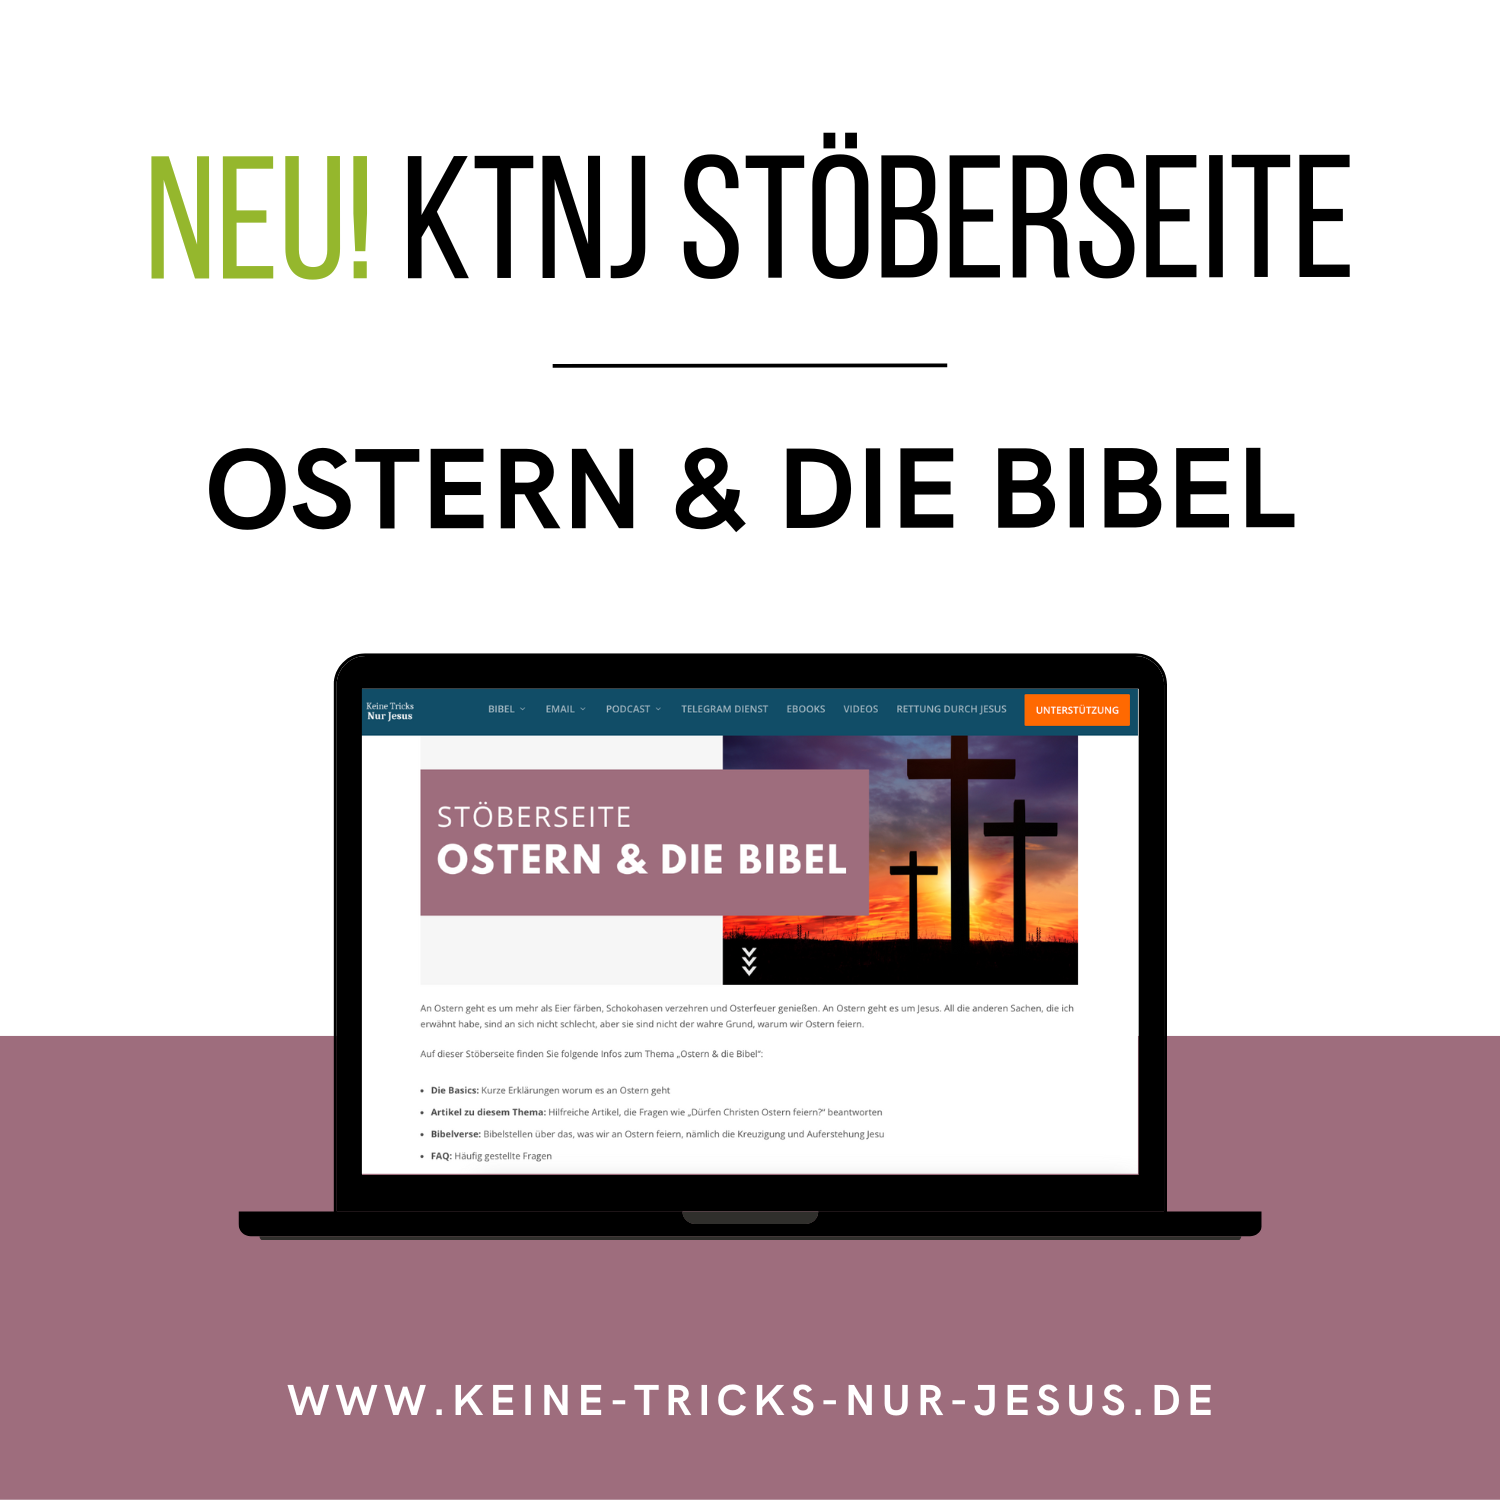 “https://www.keine-tricks-nur-jesus.de/ostern-und-die-bibel-stoeberseite”